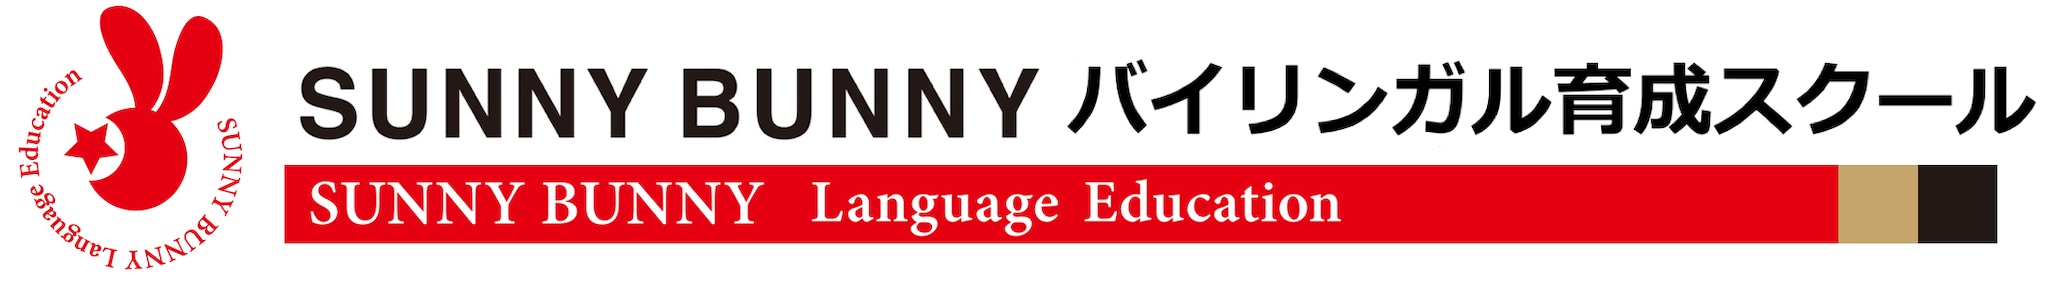 SUNNY BUNNY 英語教材オンラインショップ